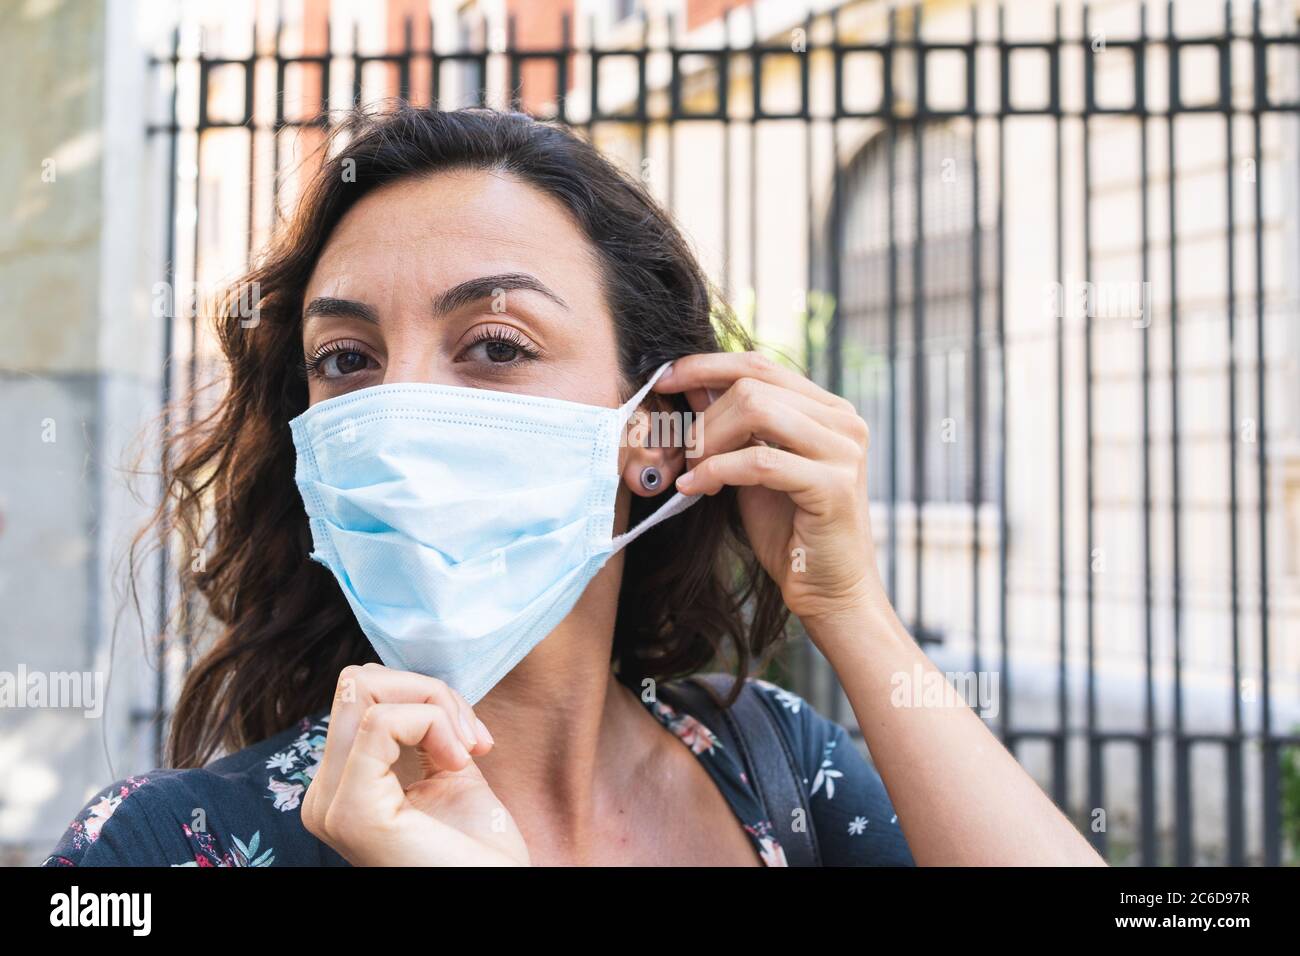 Jeune femme mettant un masque chirurgical dans la rue pour se protéger et prendre des mesures de sécurité hygiéniques. Concept de protection et de sécurité Banque D'Images